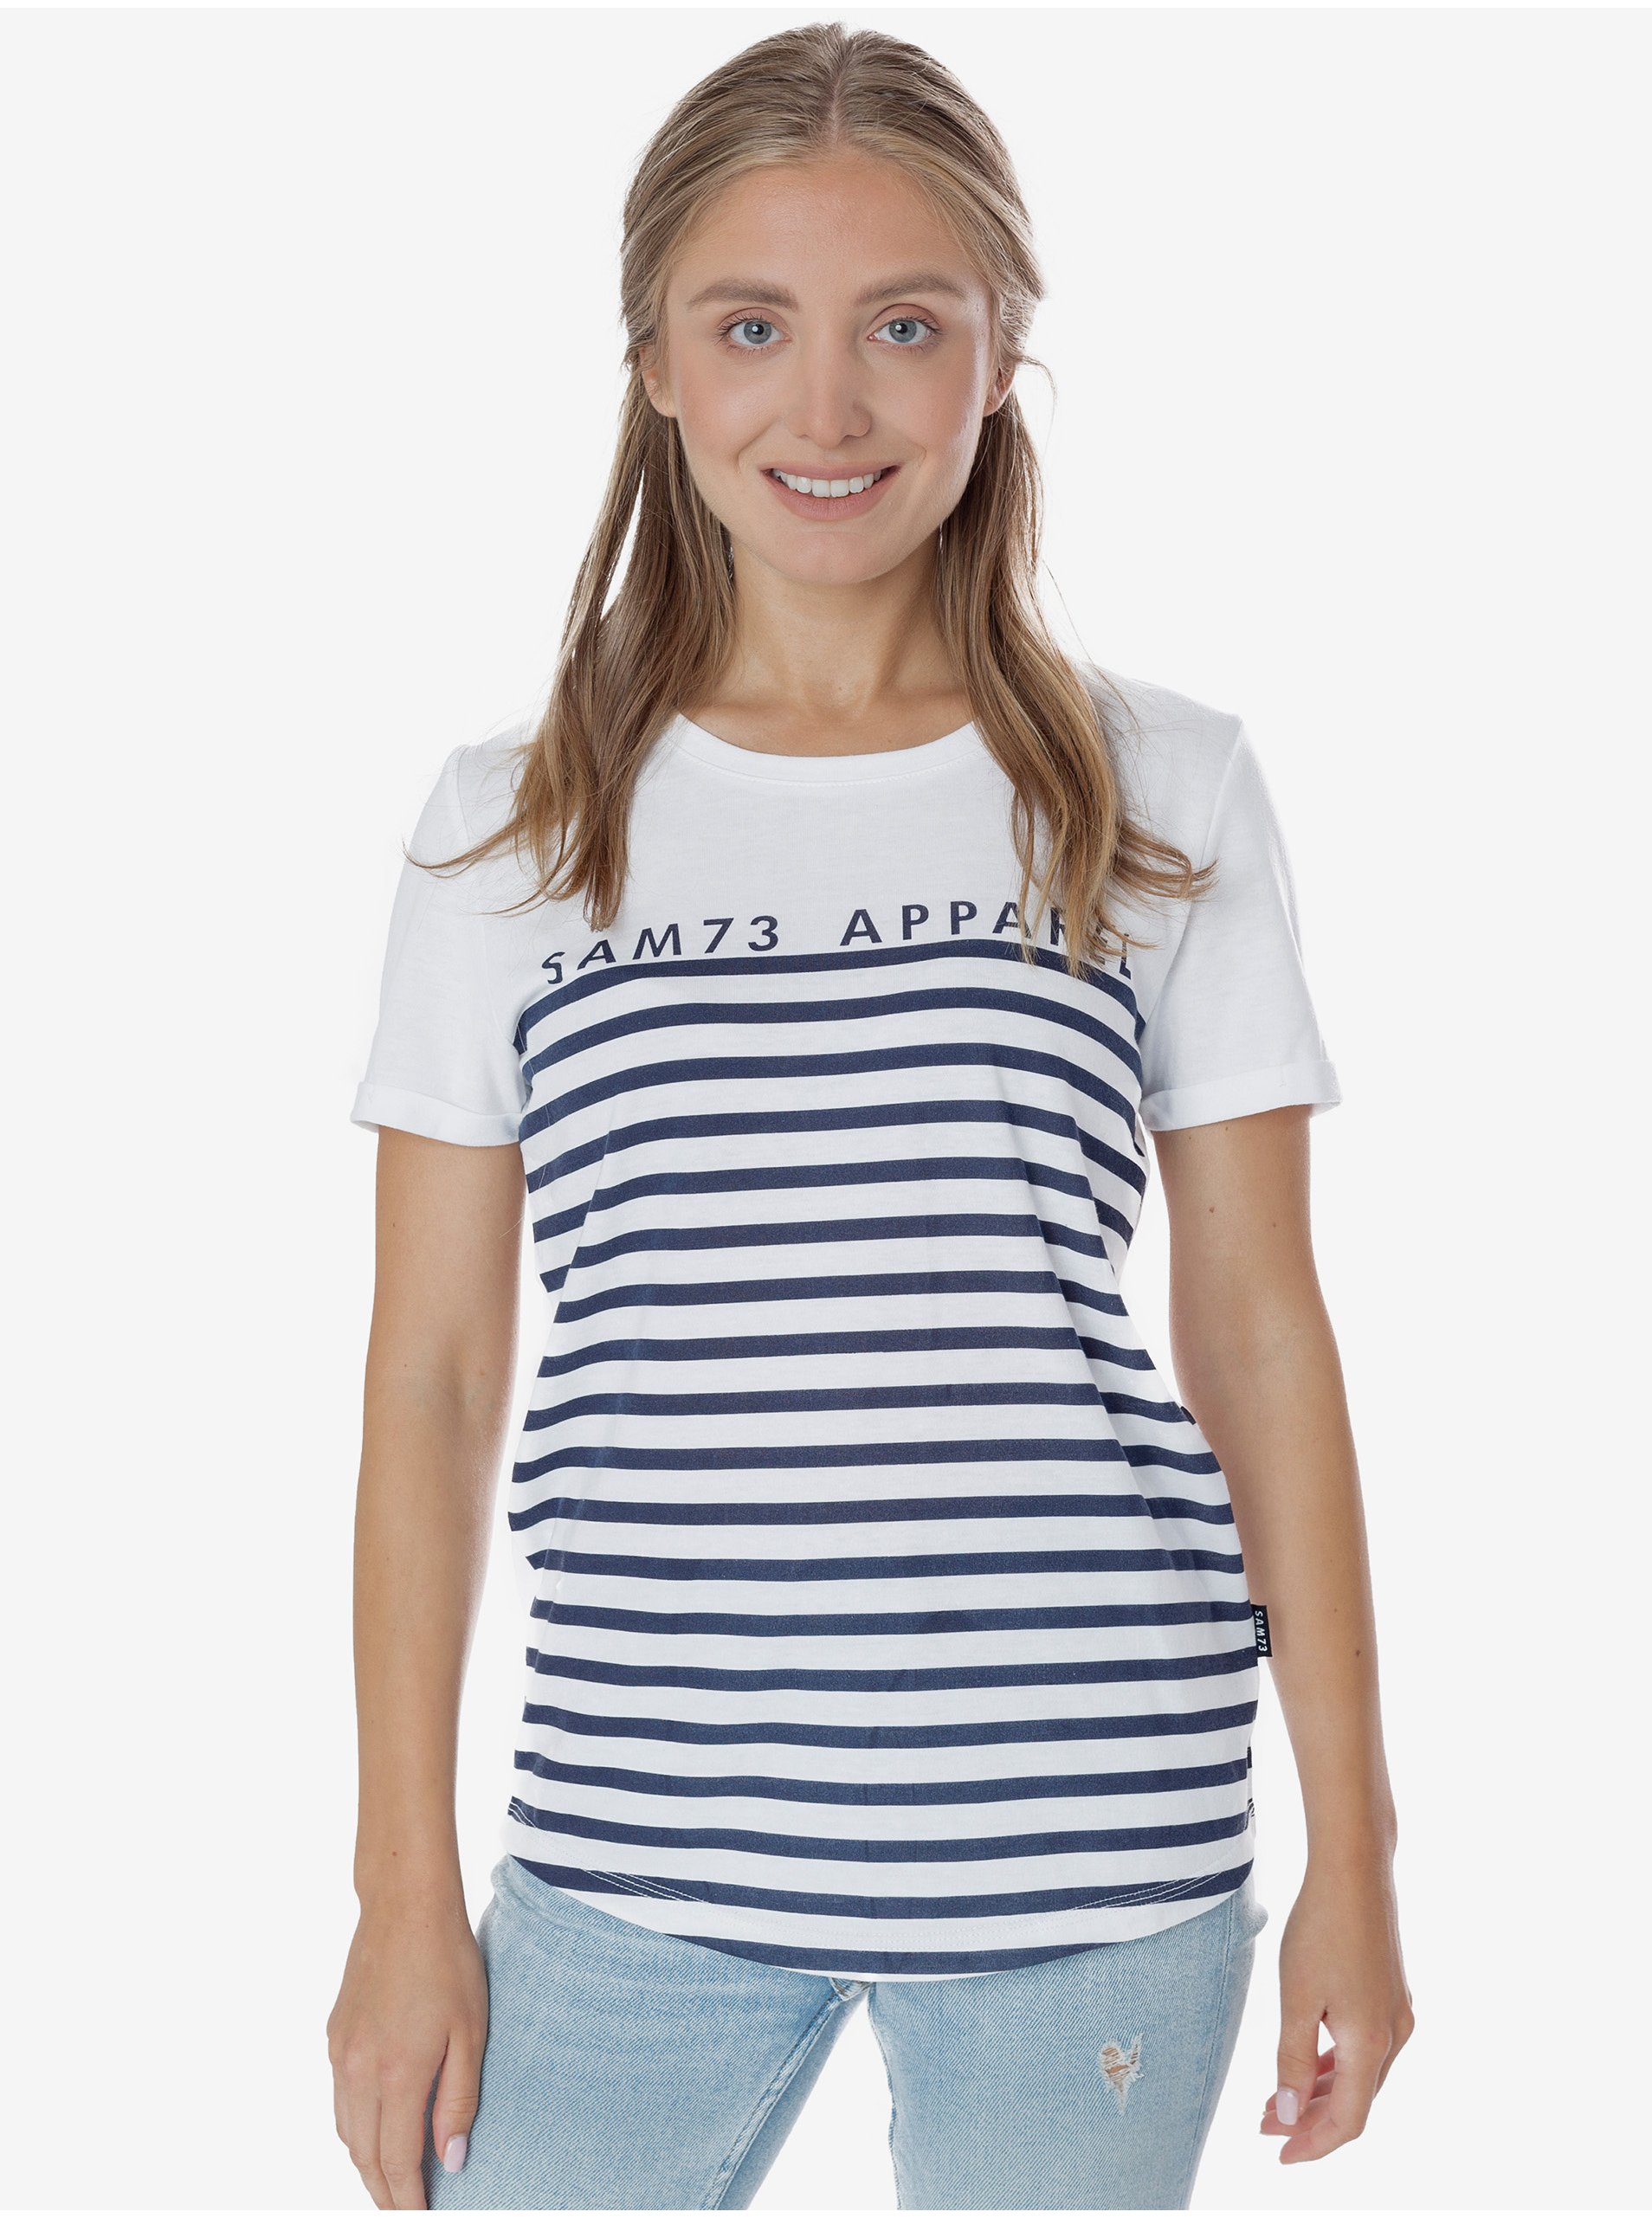 E-shop Modro-bílé dámské pruhované tričko SAM 73